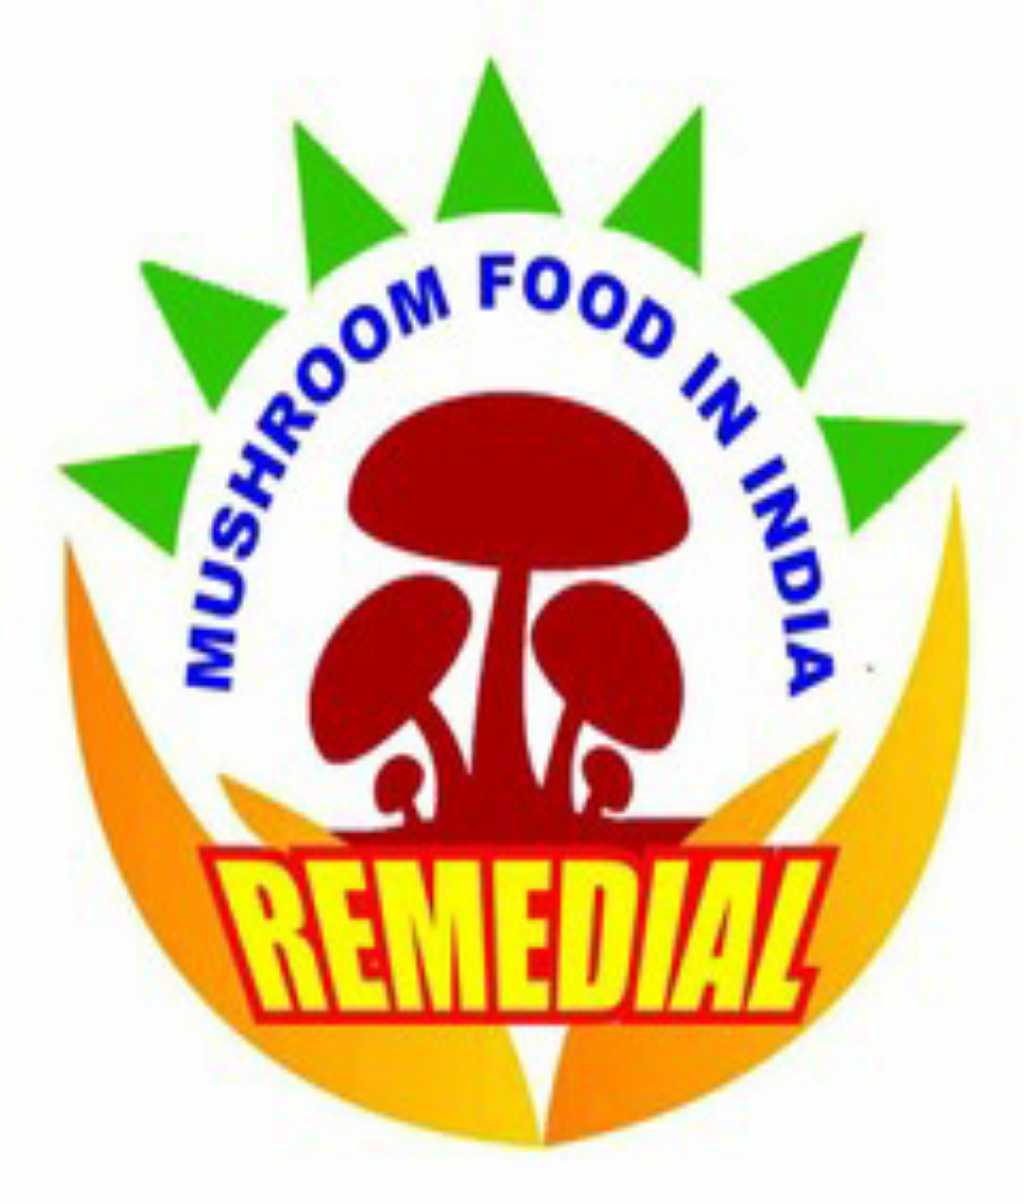 Remedial Mushroom food